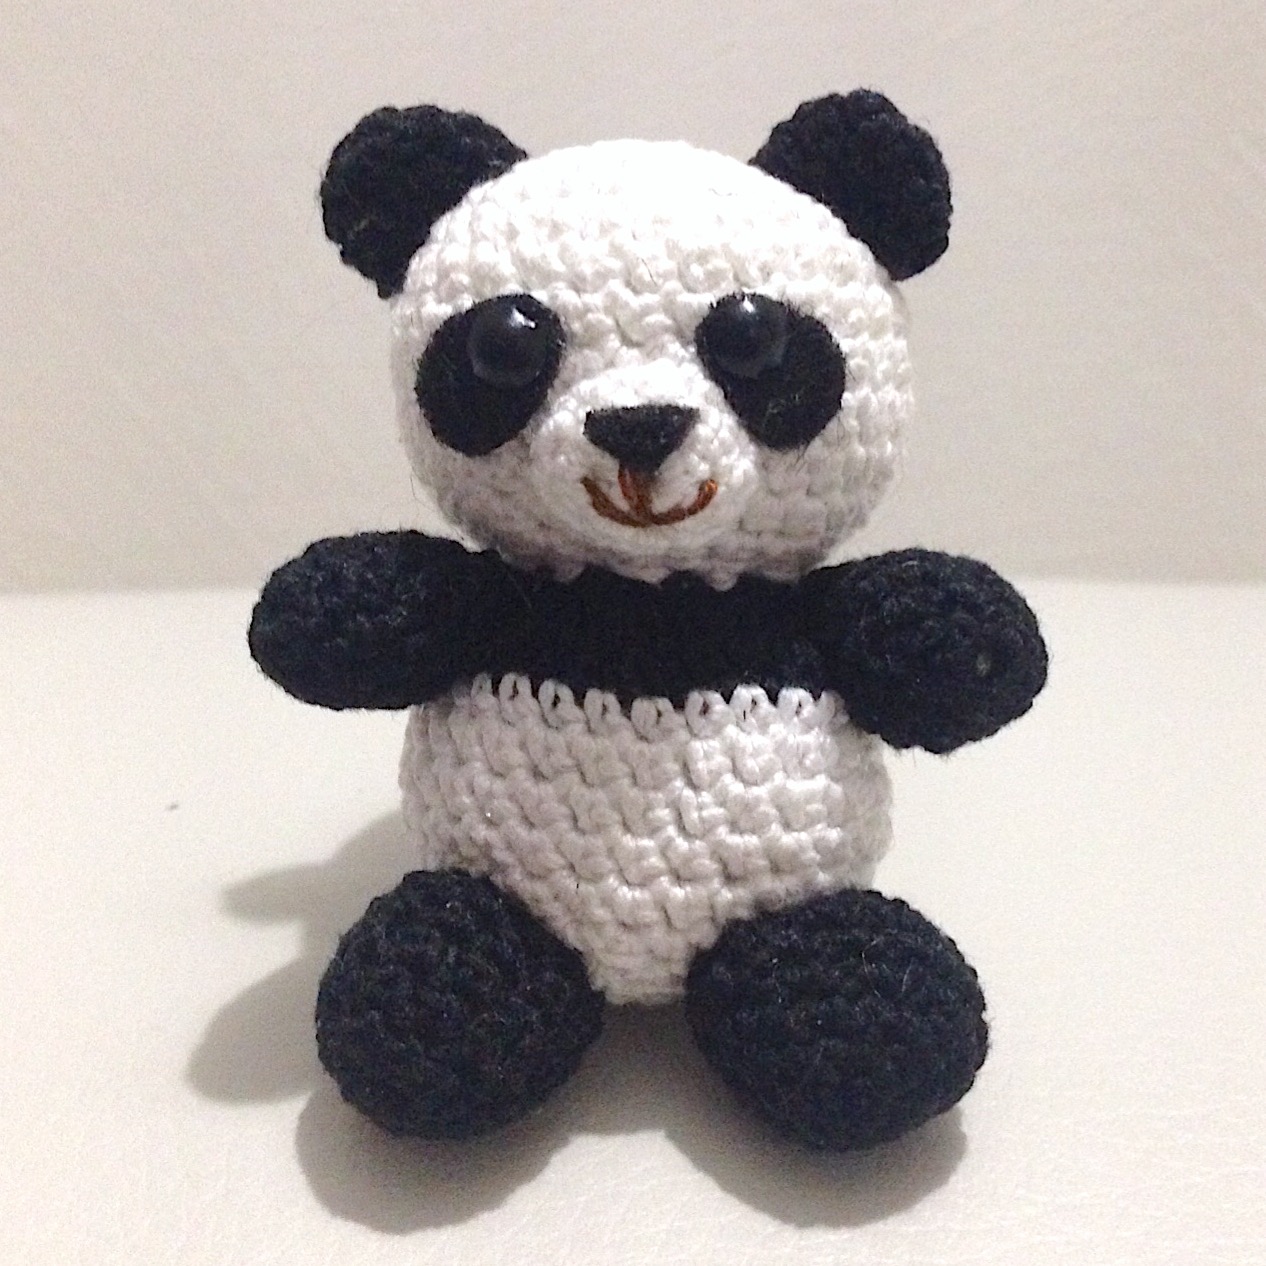 La piccola bottega della Creatività: Panda amigurumi - Tutorial uncinetto